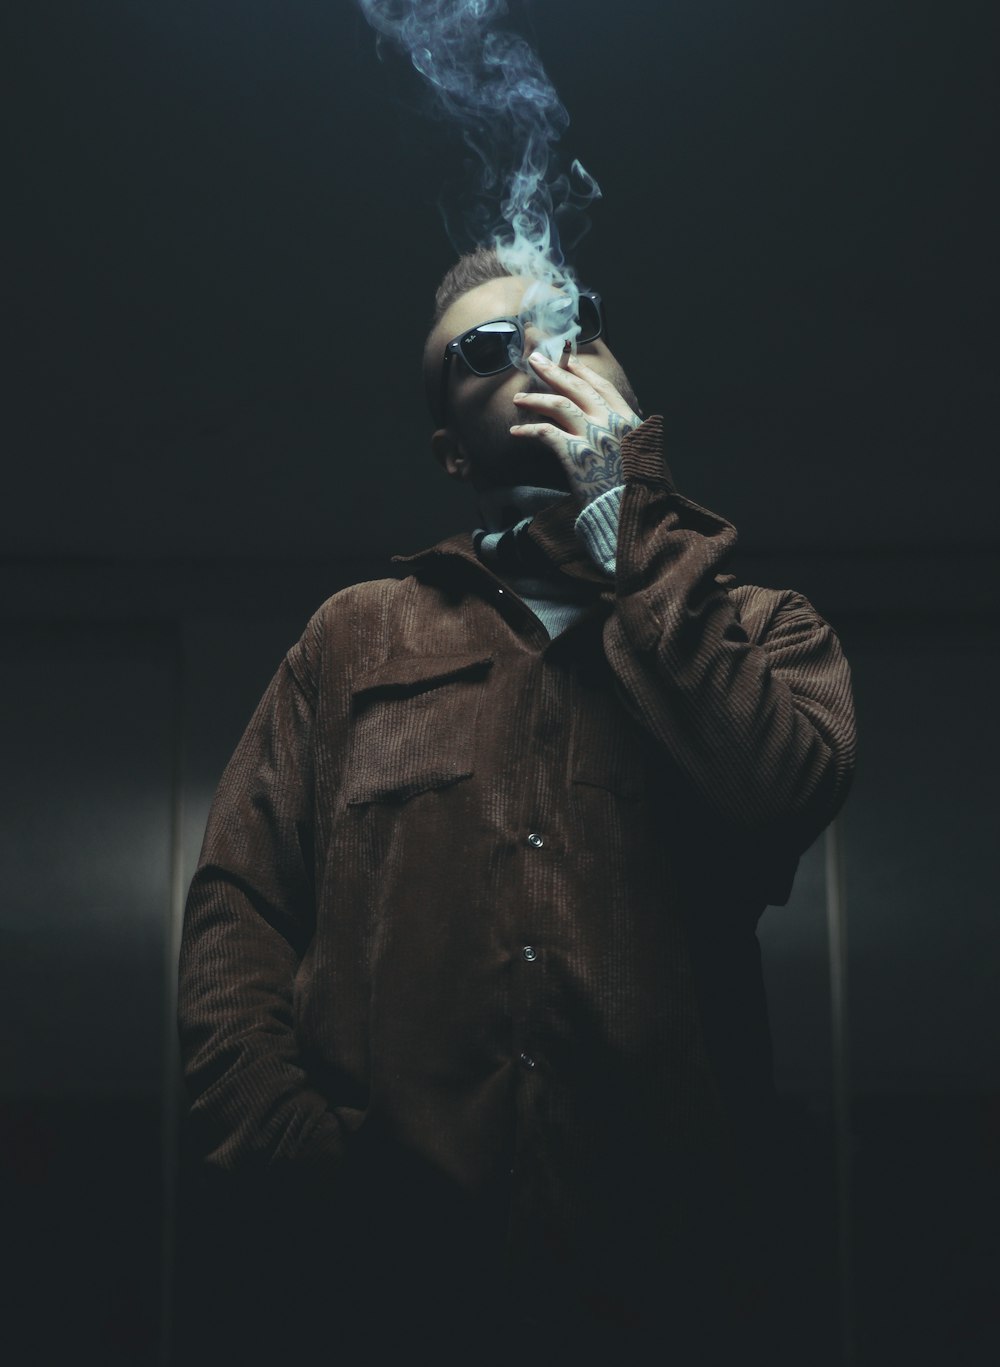 갈색 가죽 재킷을 피우는 남자 흡연 담배